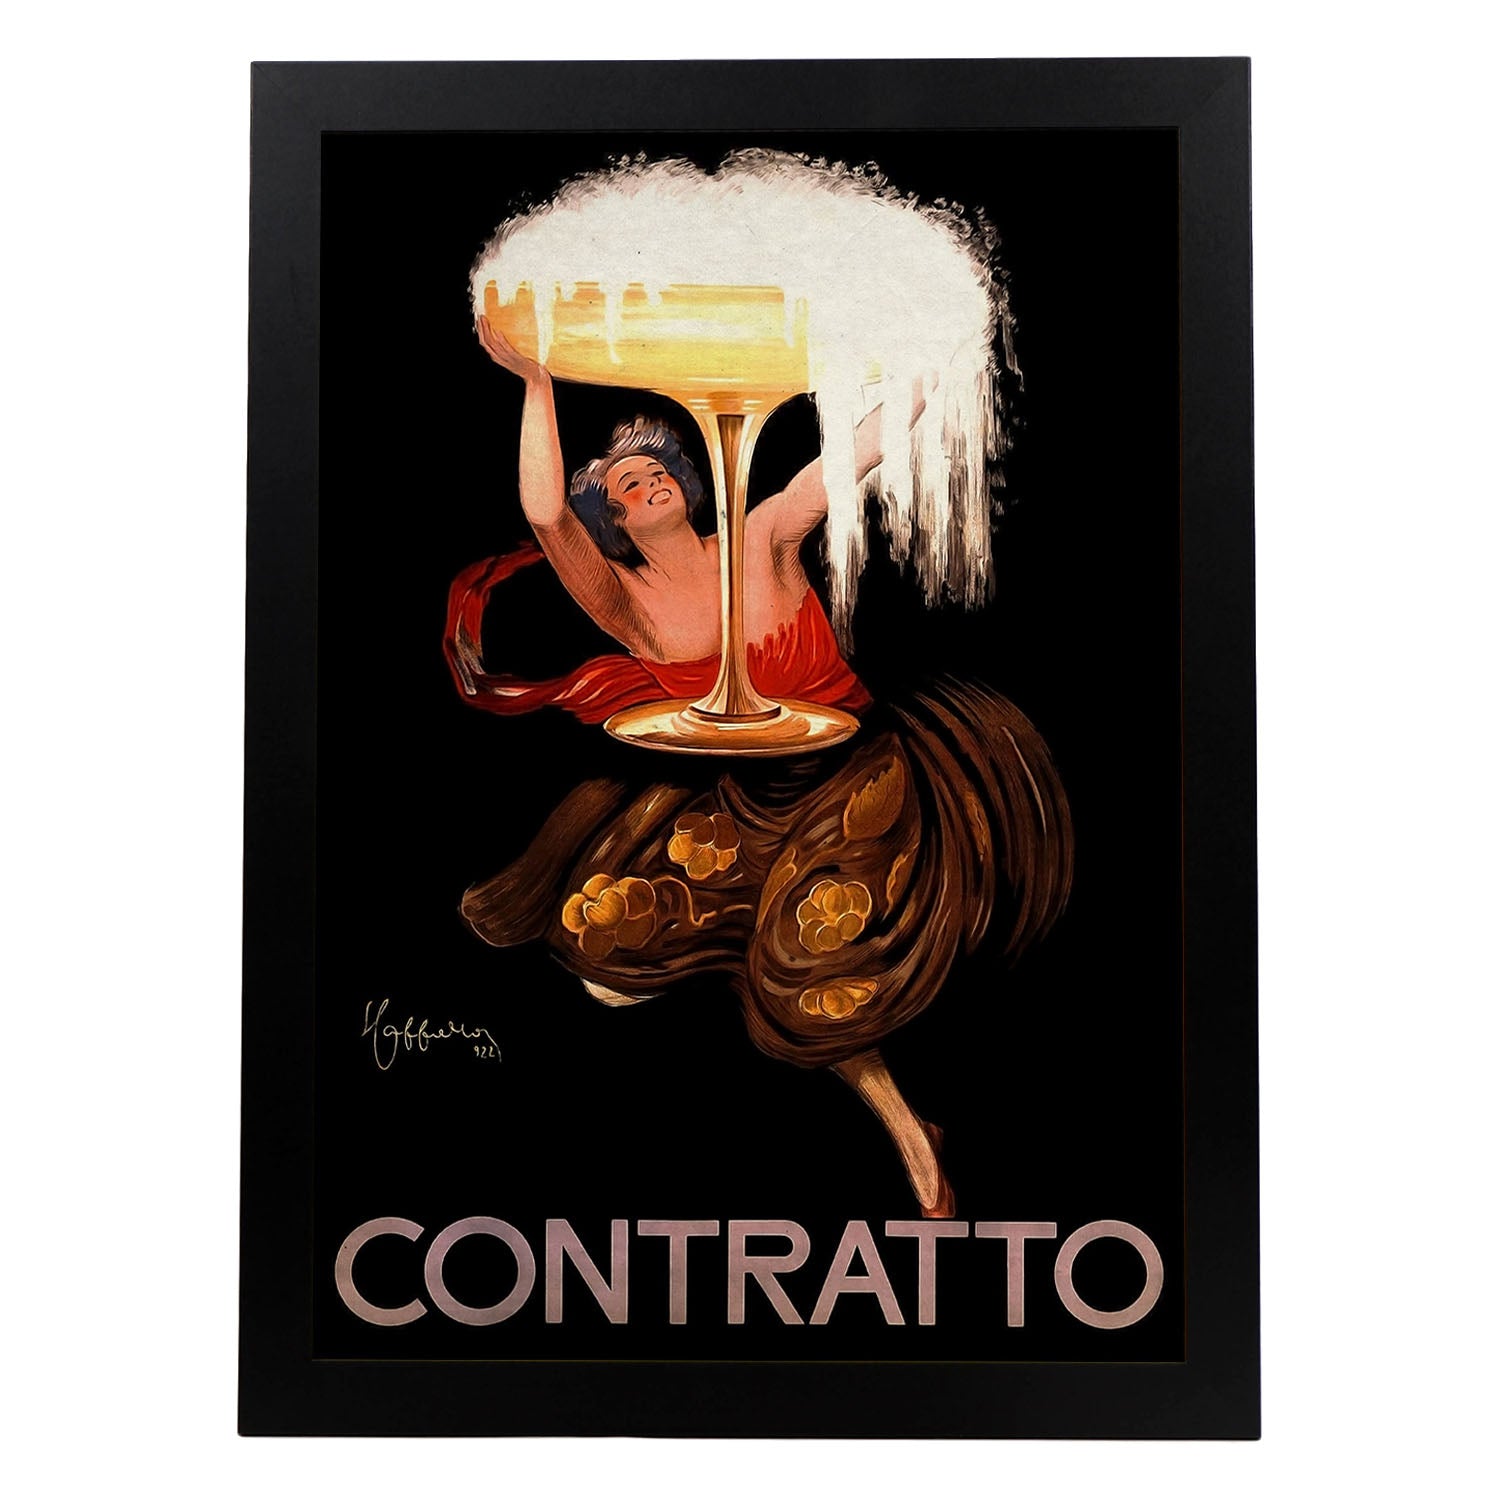 Poster vintage de Contratto. con imágenes vintage y de publicidad antigua.-Artwork-Nacnic-A4-Marco Negro-Nacnic Estudio SL